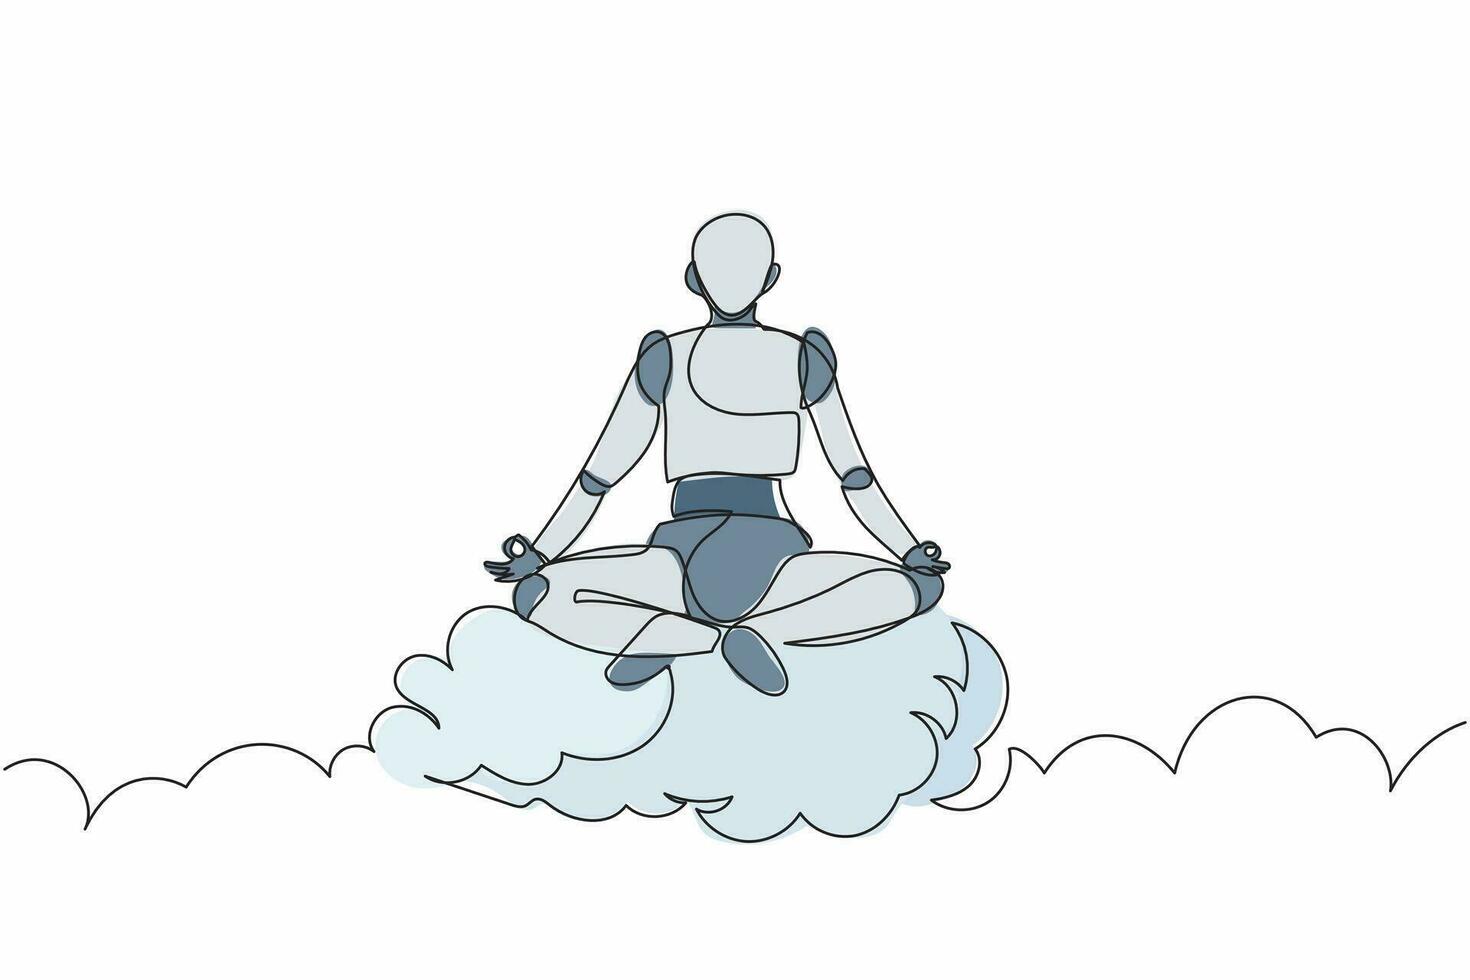 único robô de desenho de linha contínua medita e descansa em posição de ioga nas nuvens. inteligência artificial robótica moderna. indústria de tecnologia eletrônica. ilustração vetorial de design de desenho de uma linha vetor